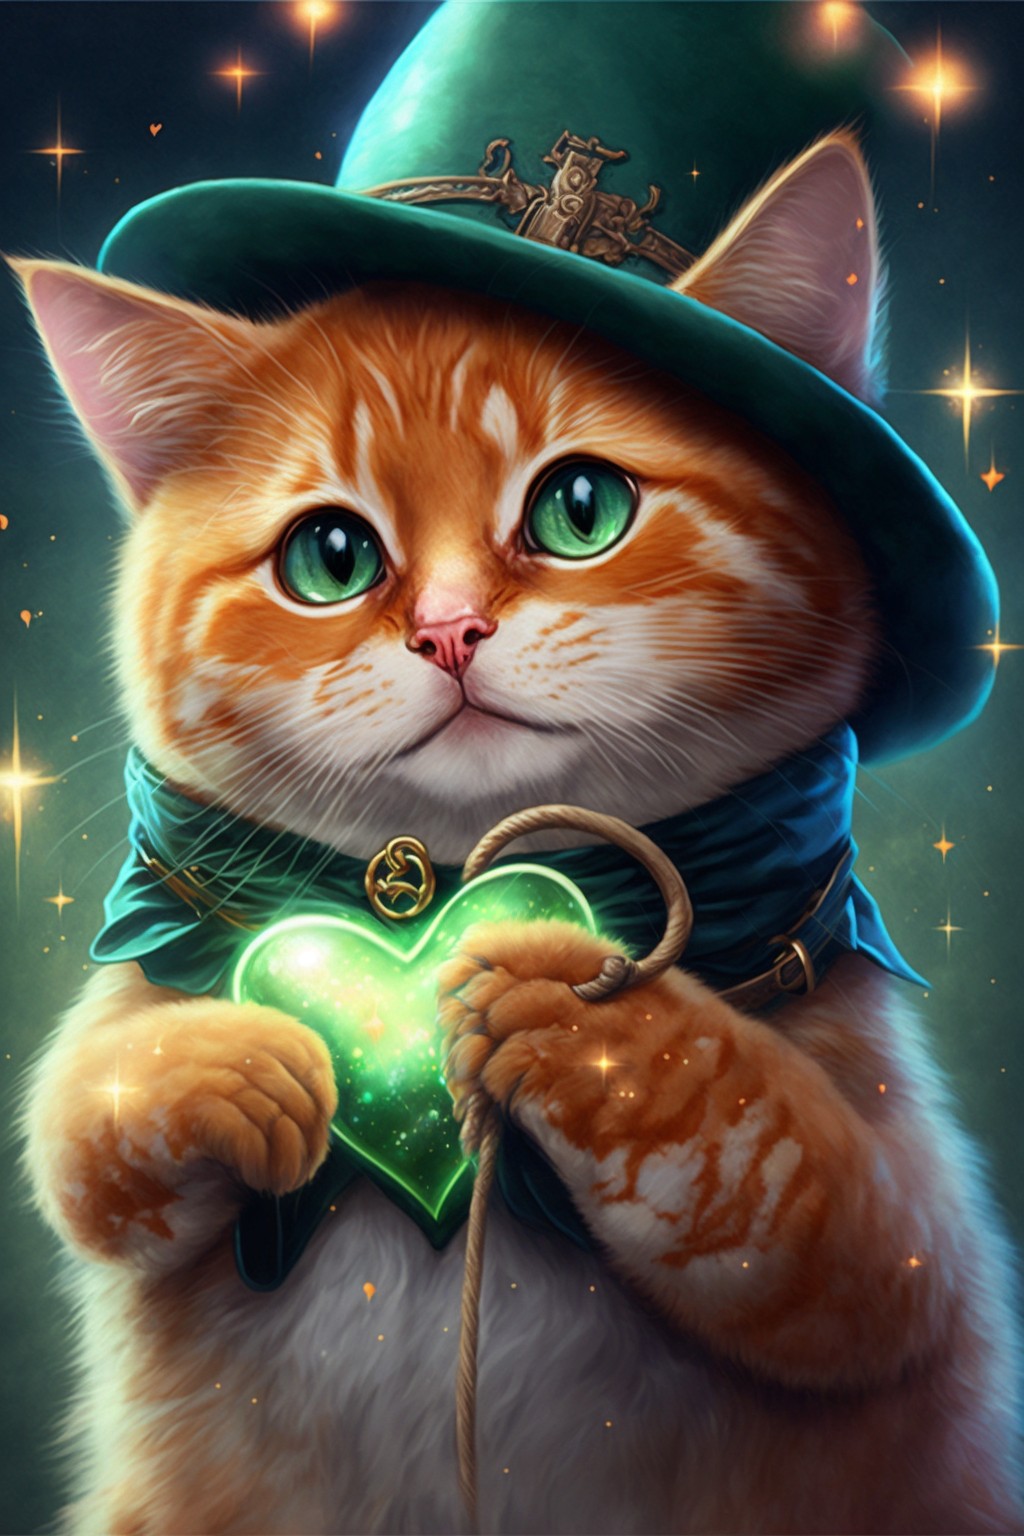 cute magic kitten holding a heart